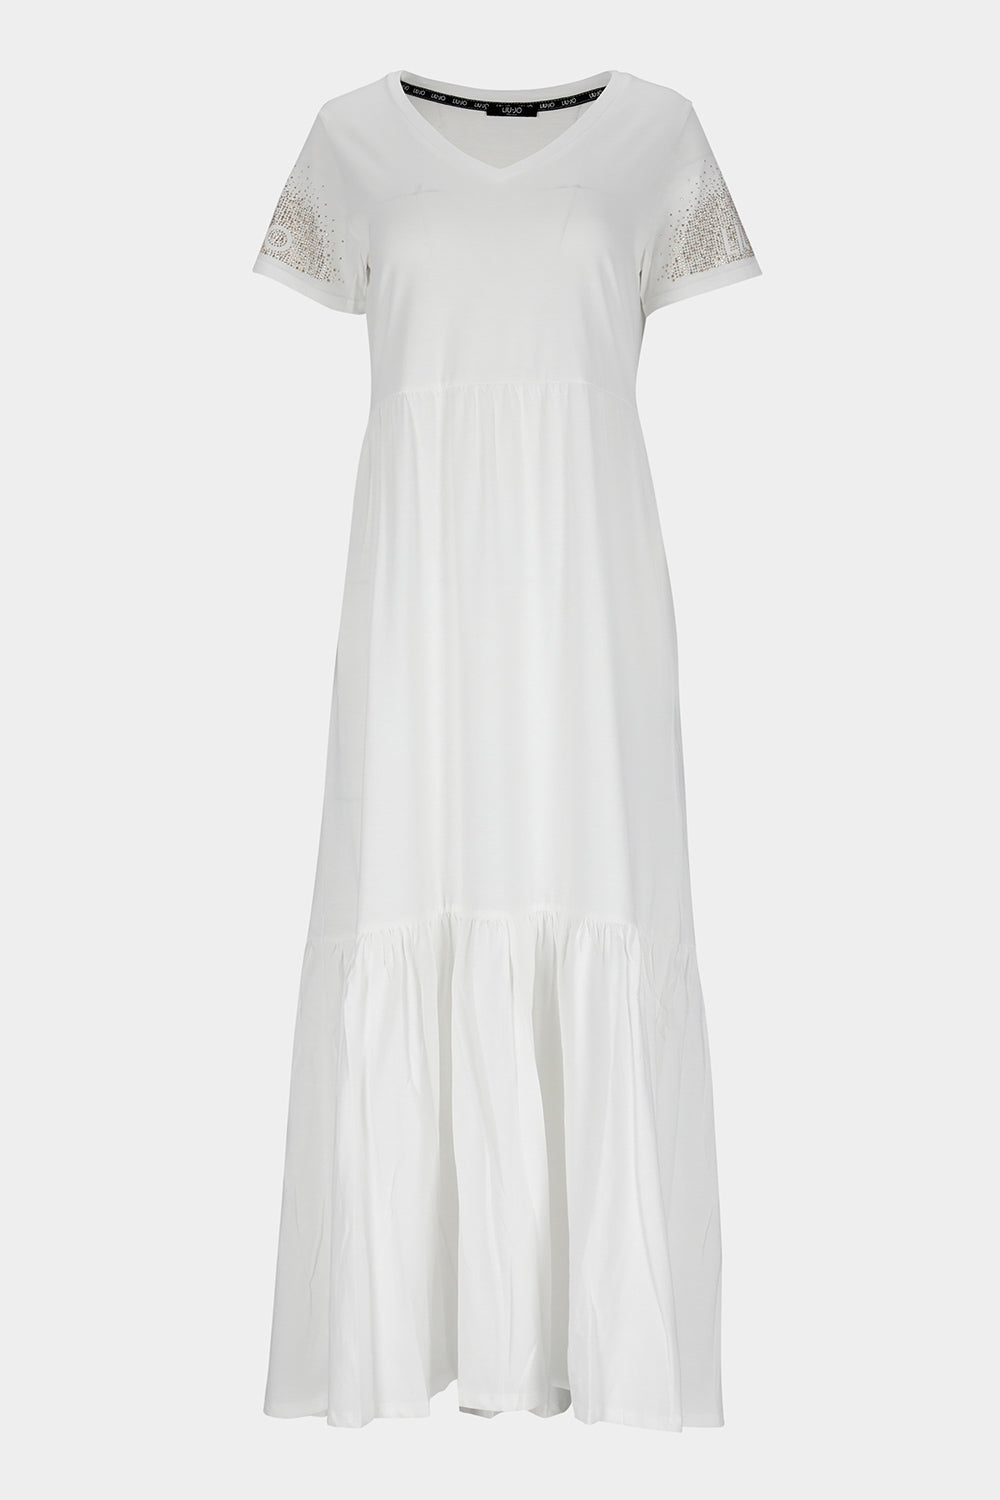 שמלת טי שירט לנשים אבני חן LIU JO Vendome online | ונדום .